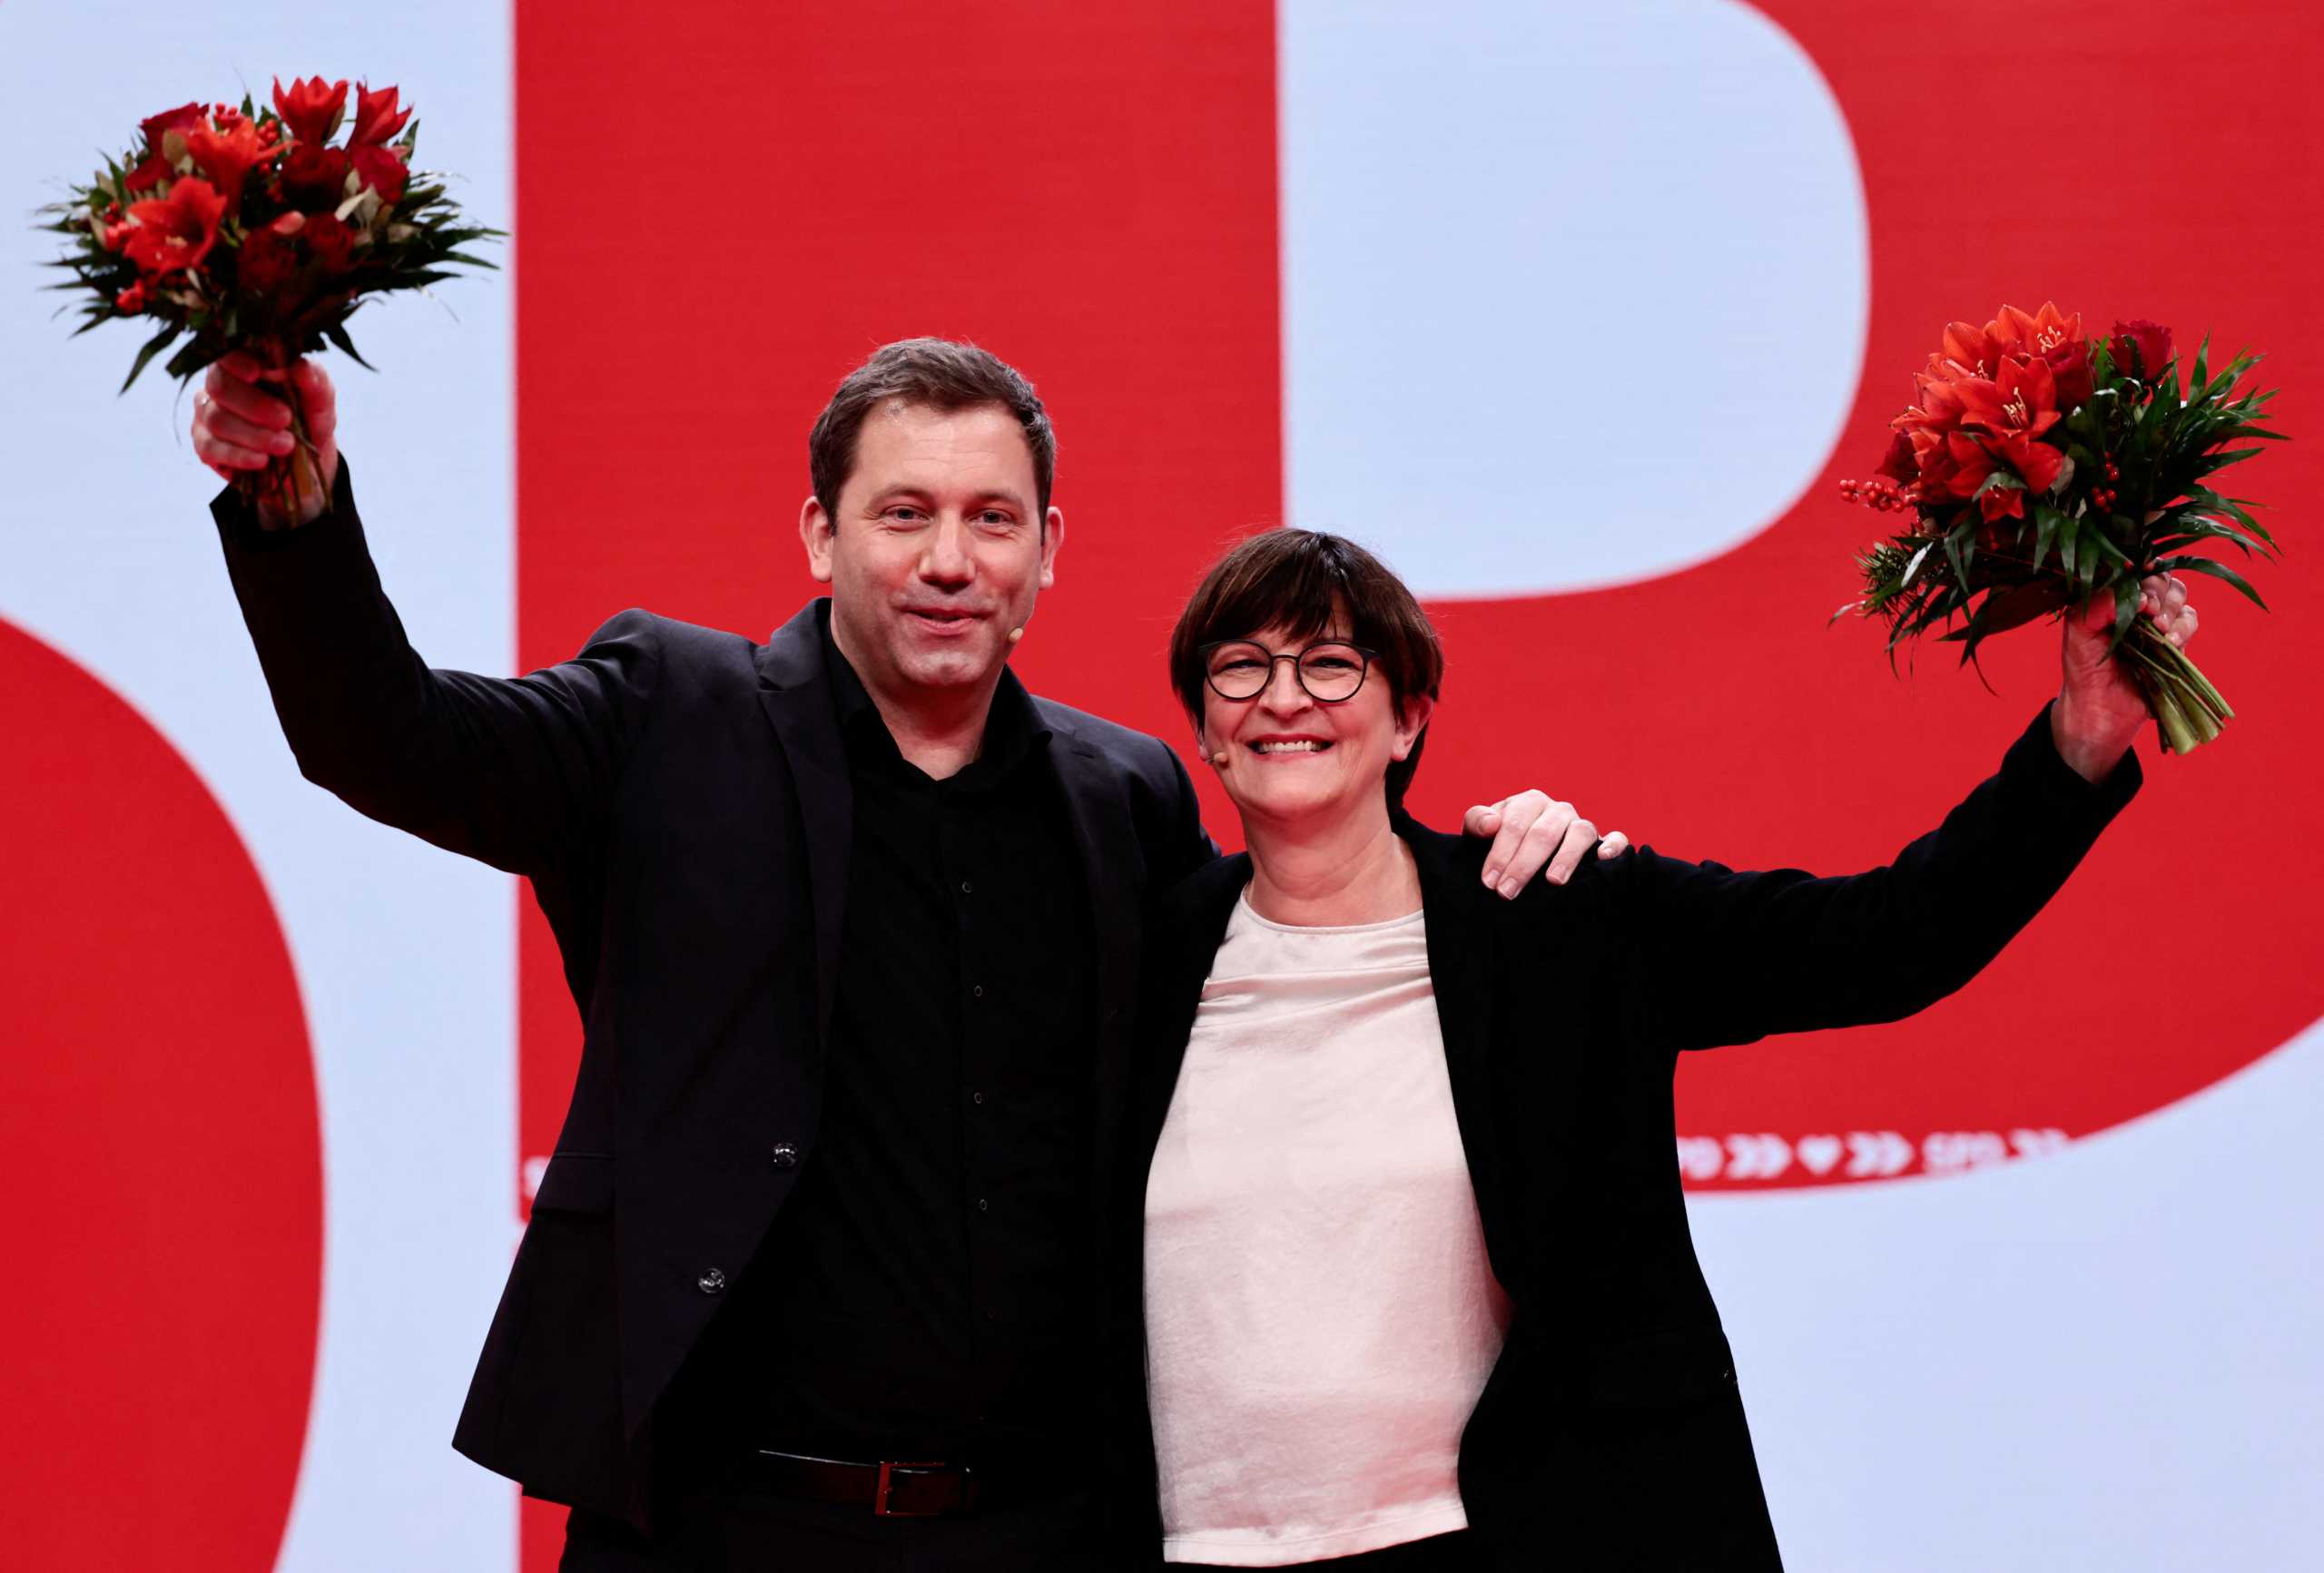 Γερμανία – SPD: Λαρς Κλινγκμπάιλ και Σάσκια Έσκεν το νέο δίδυμο στην ηγεσία